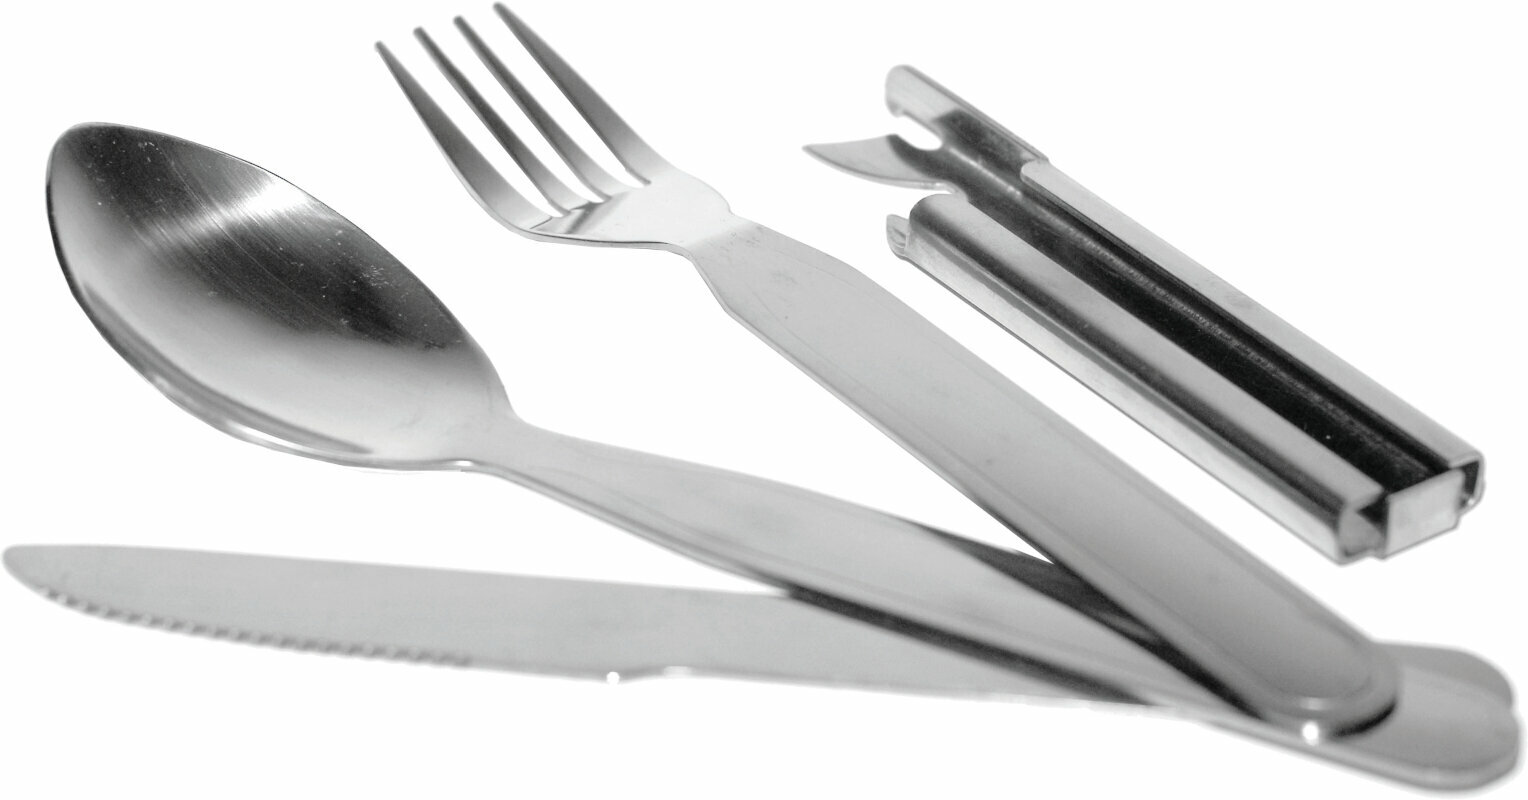 Μαχαιροπήρουνα Rockland Premium Tools Cutlery Set Μαχαιροπήρουνα